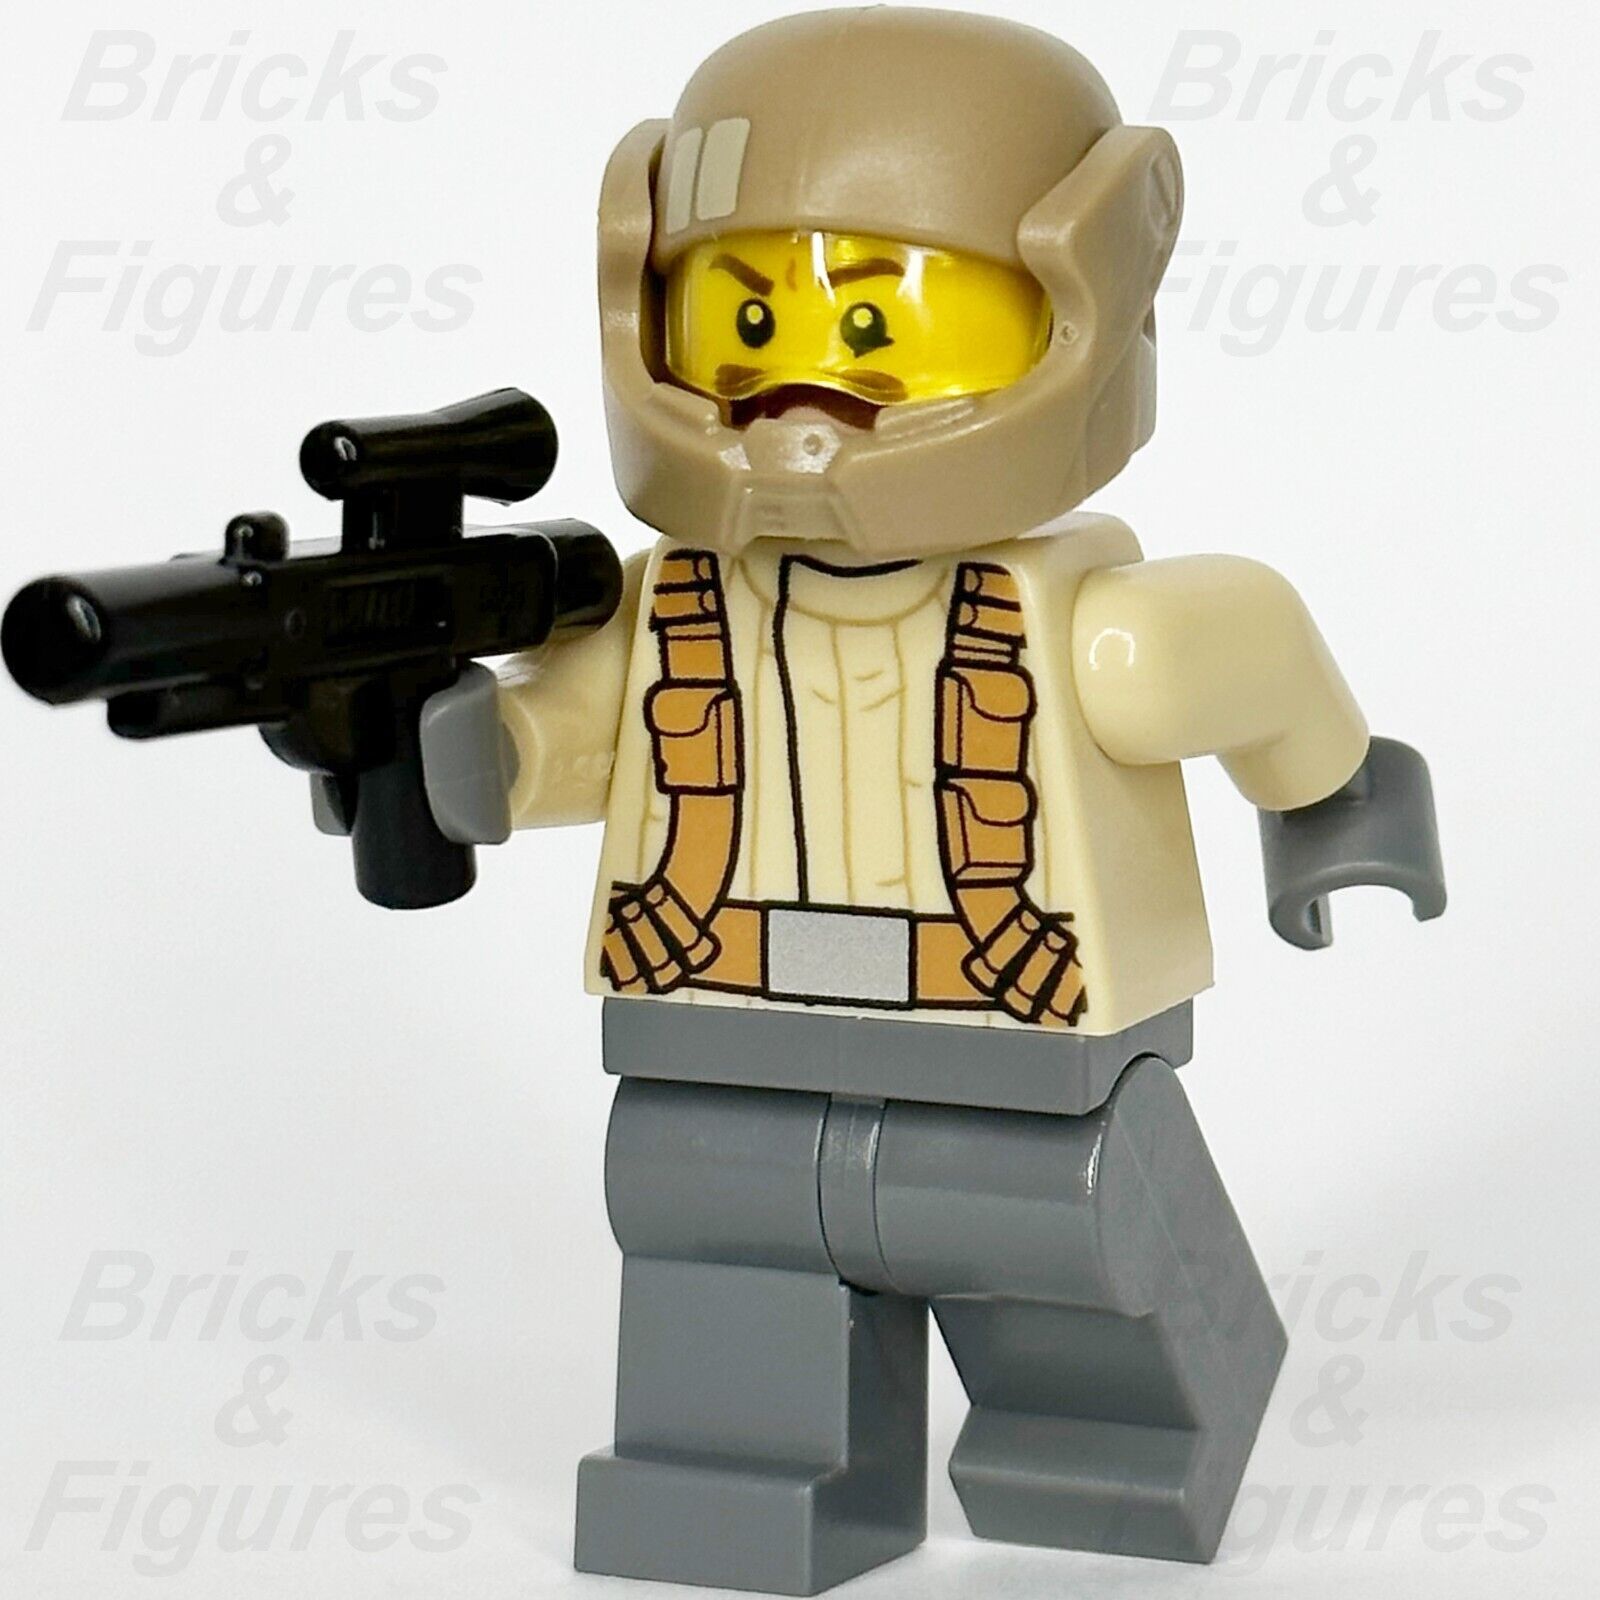 LEGO Star Wars Resistance Trooper Minifigure Tan Jacket Moustache 75131 sw0696 1